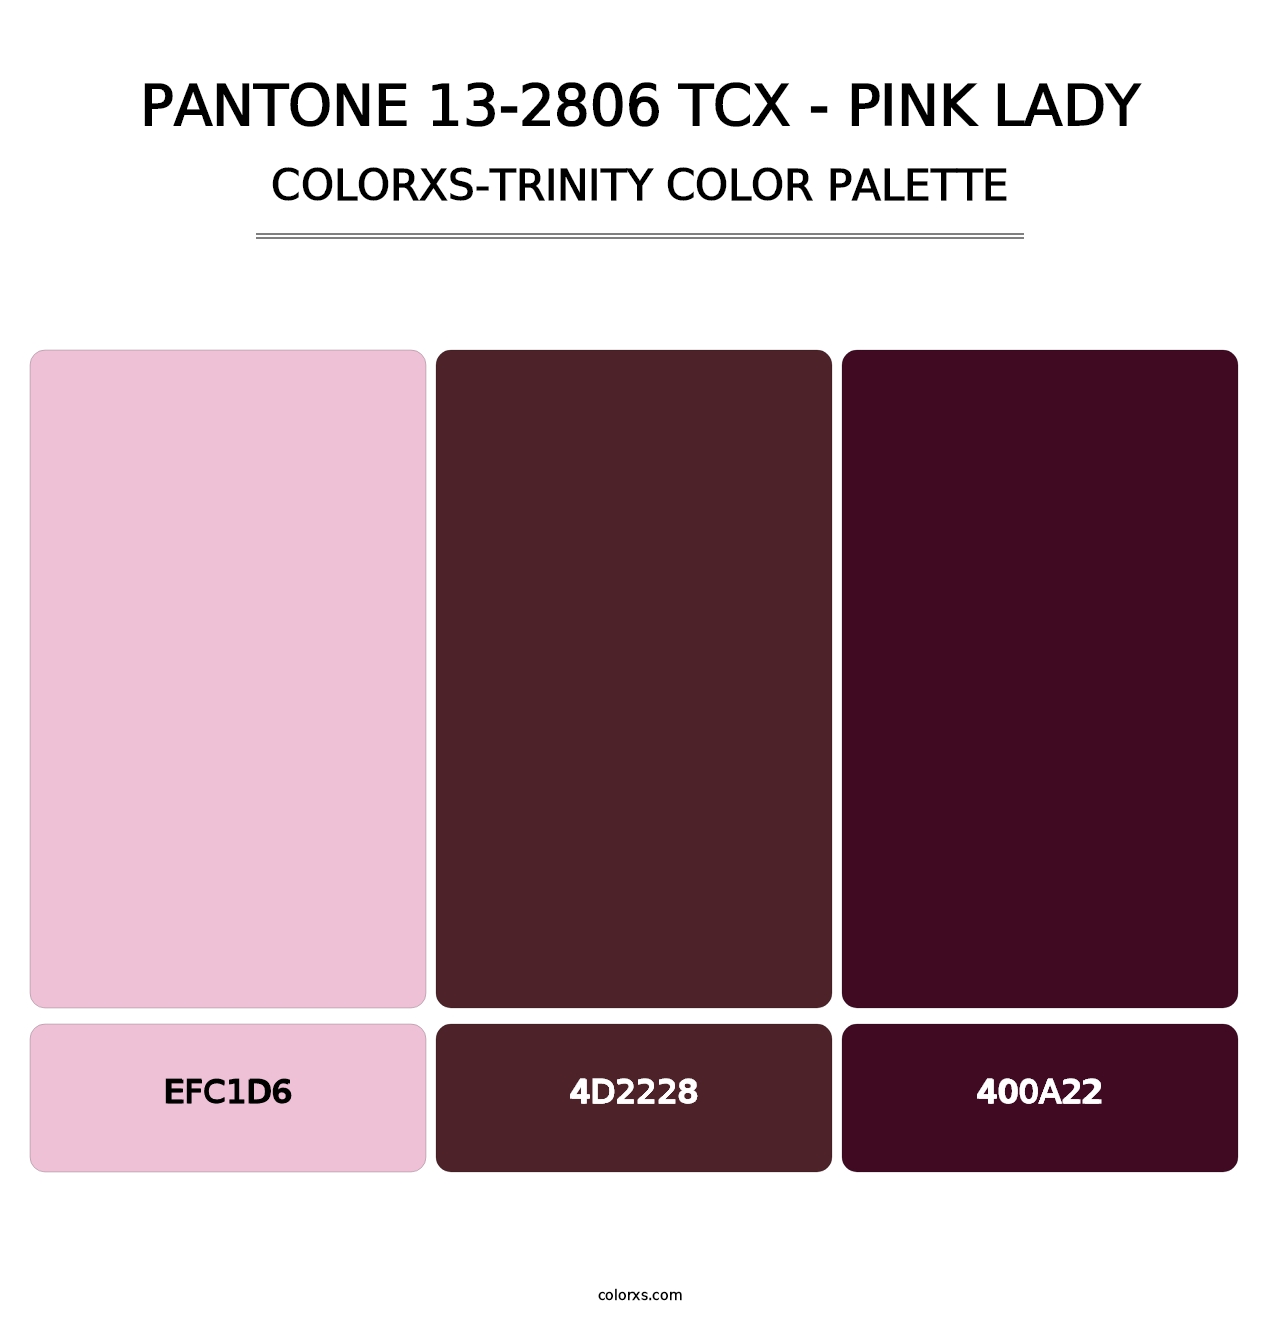 PANTONE 13-2806 TCX - Pink Lady - Colorxs Trinity Palette